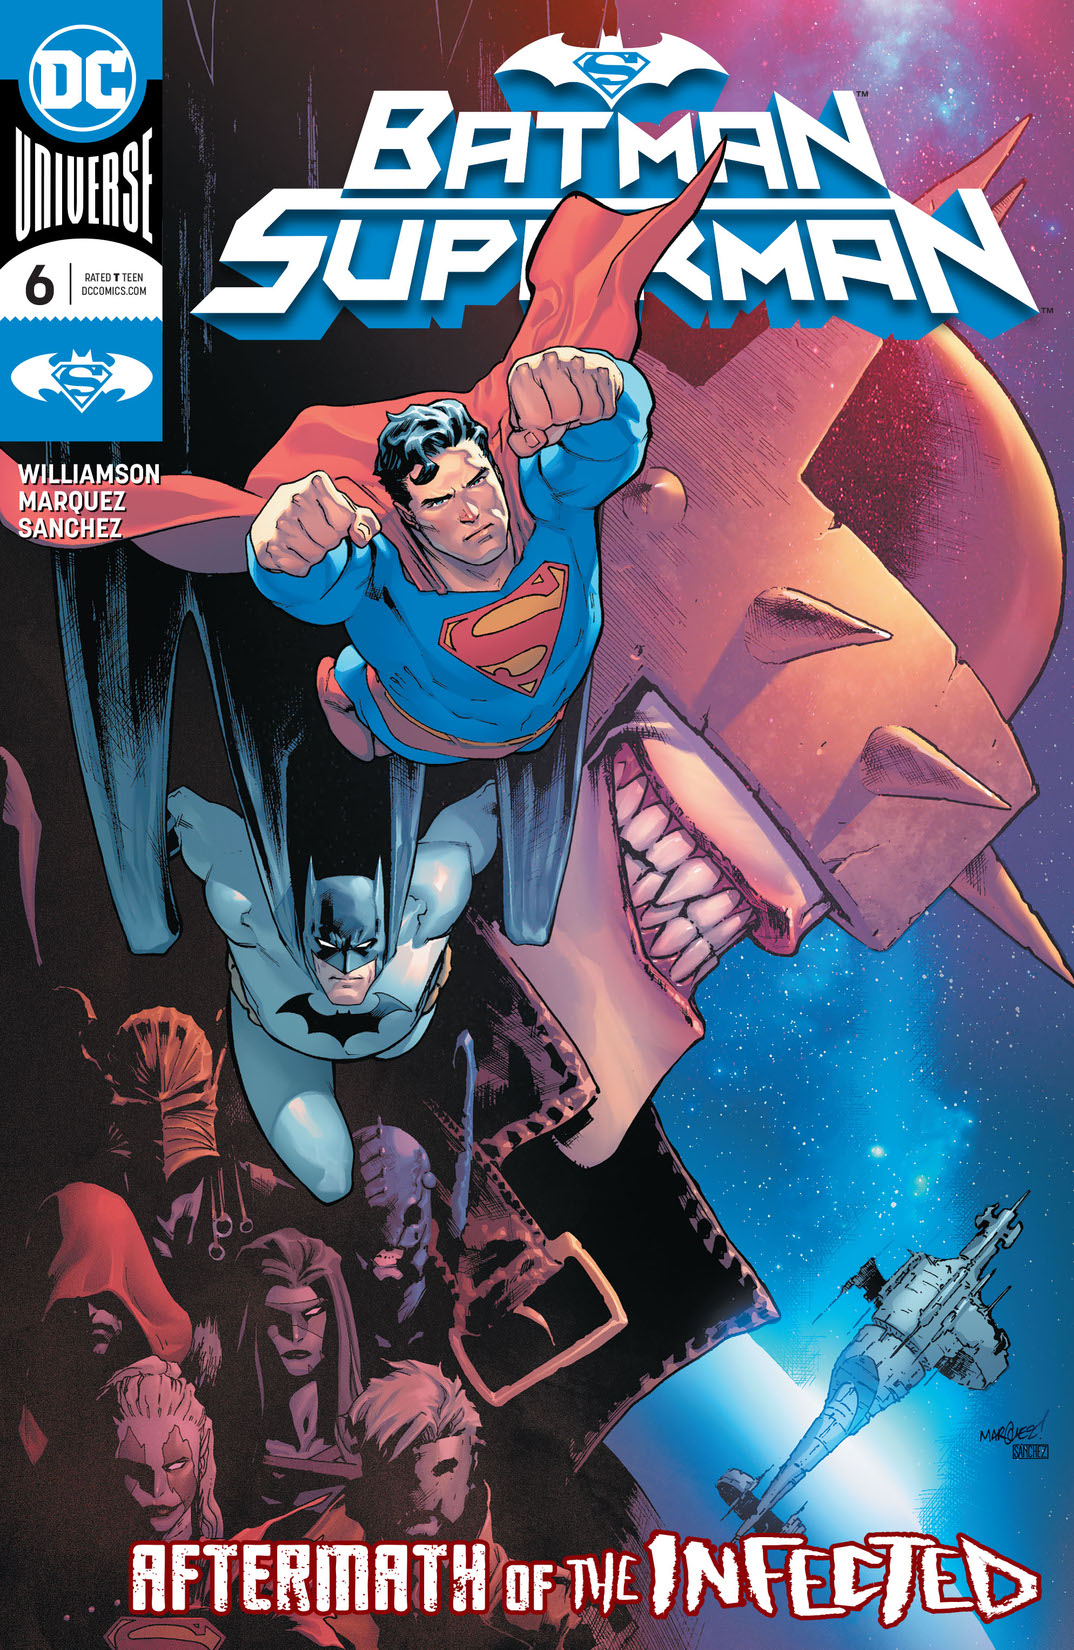 Batman/Superman (2019-) #6 preview images